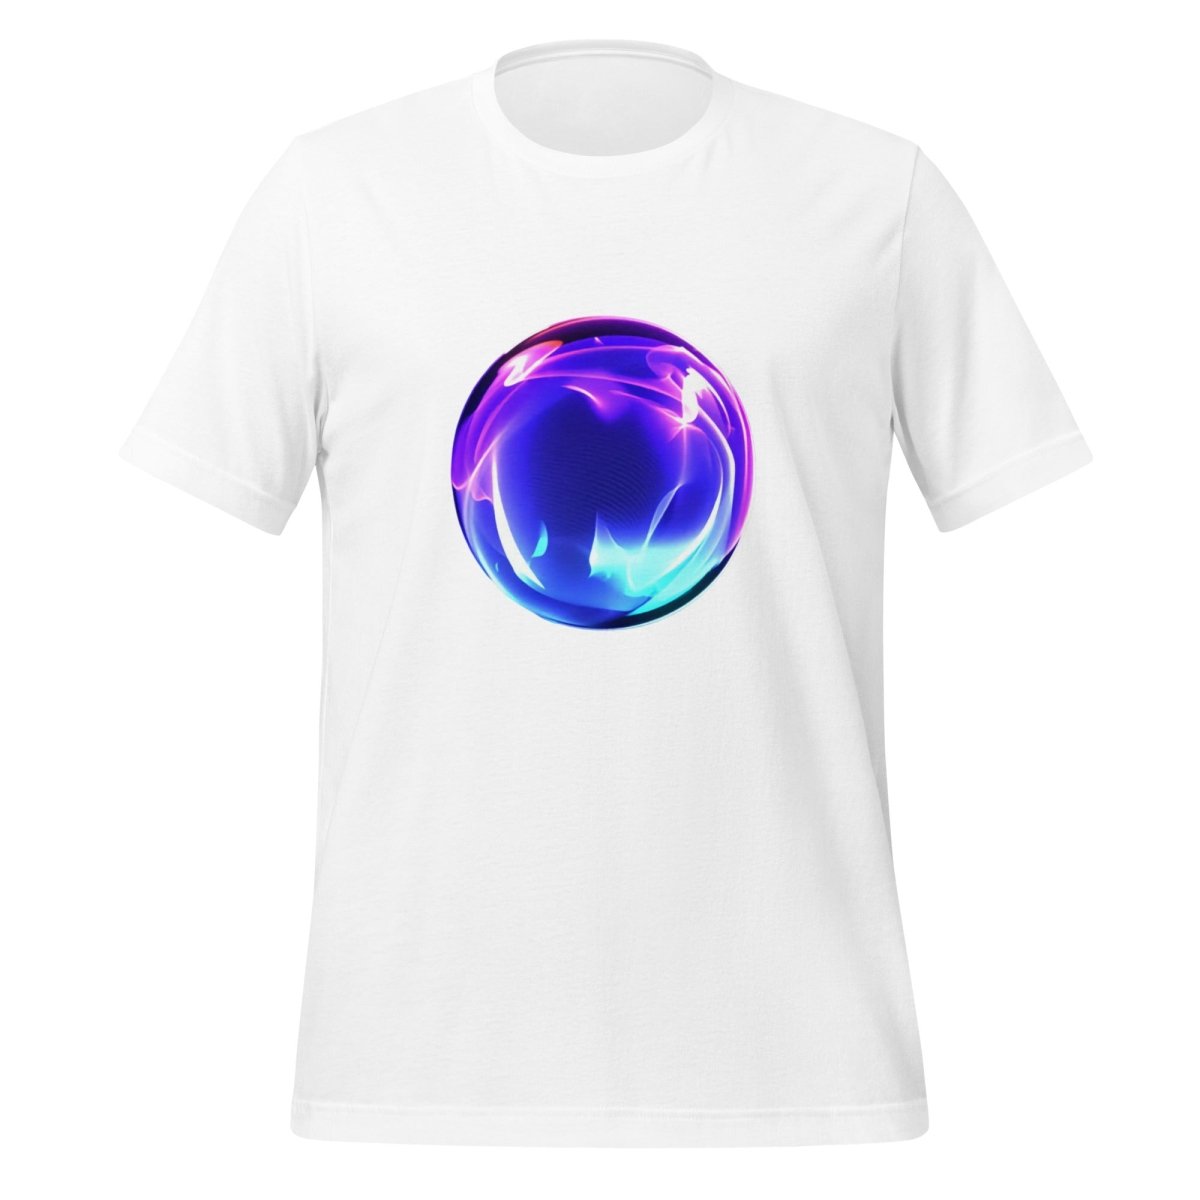 AI Assistant Artwork T - Shirt (unisex) - White - AI Store